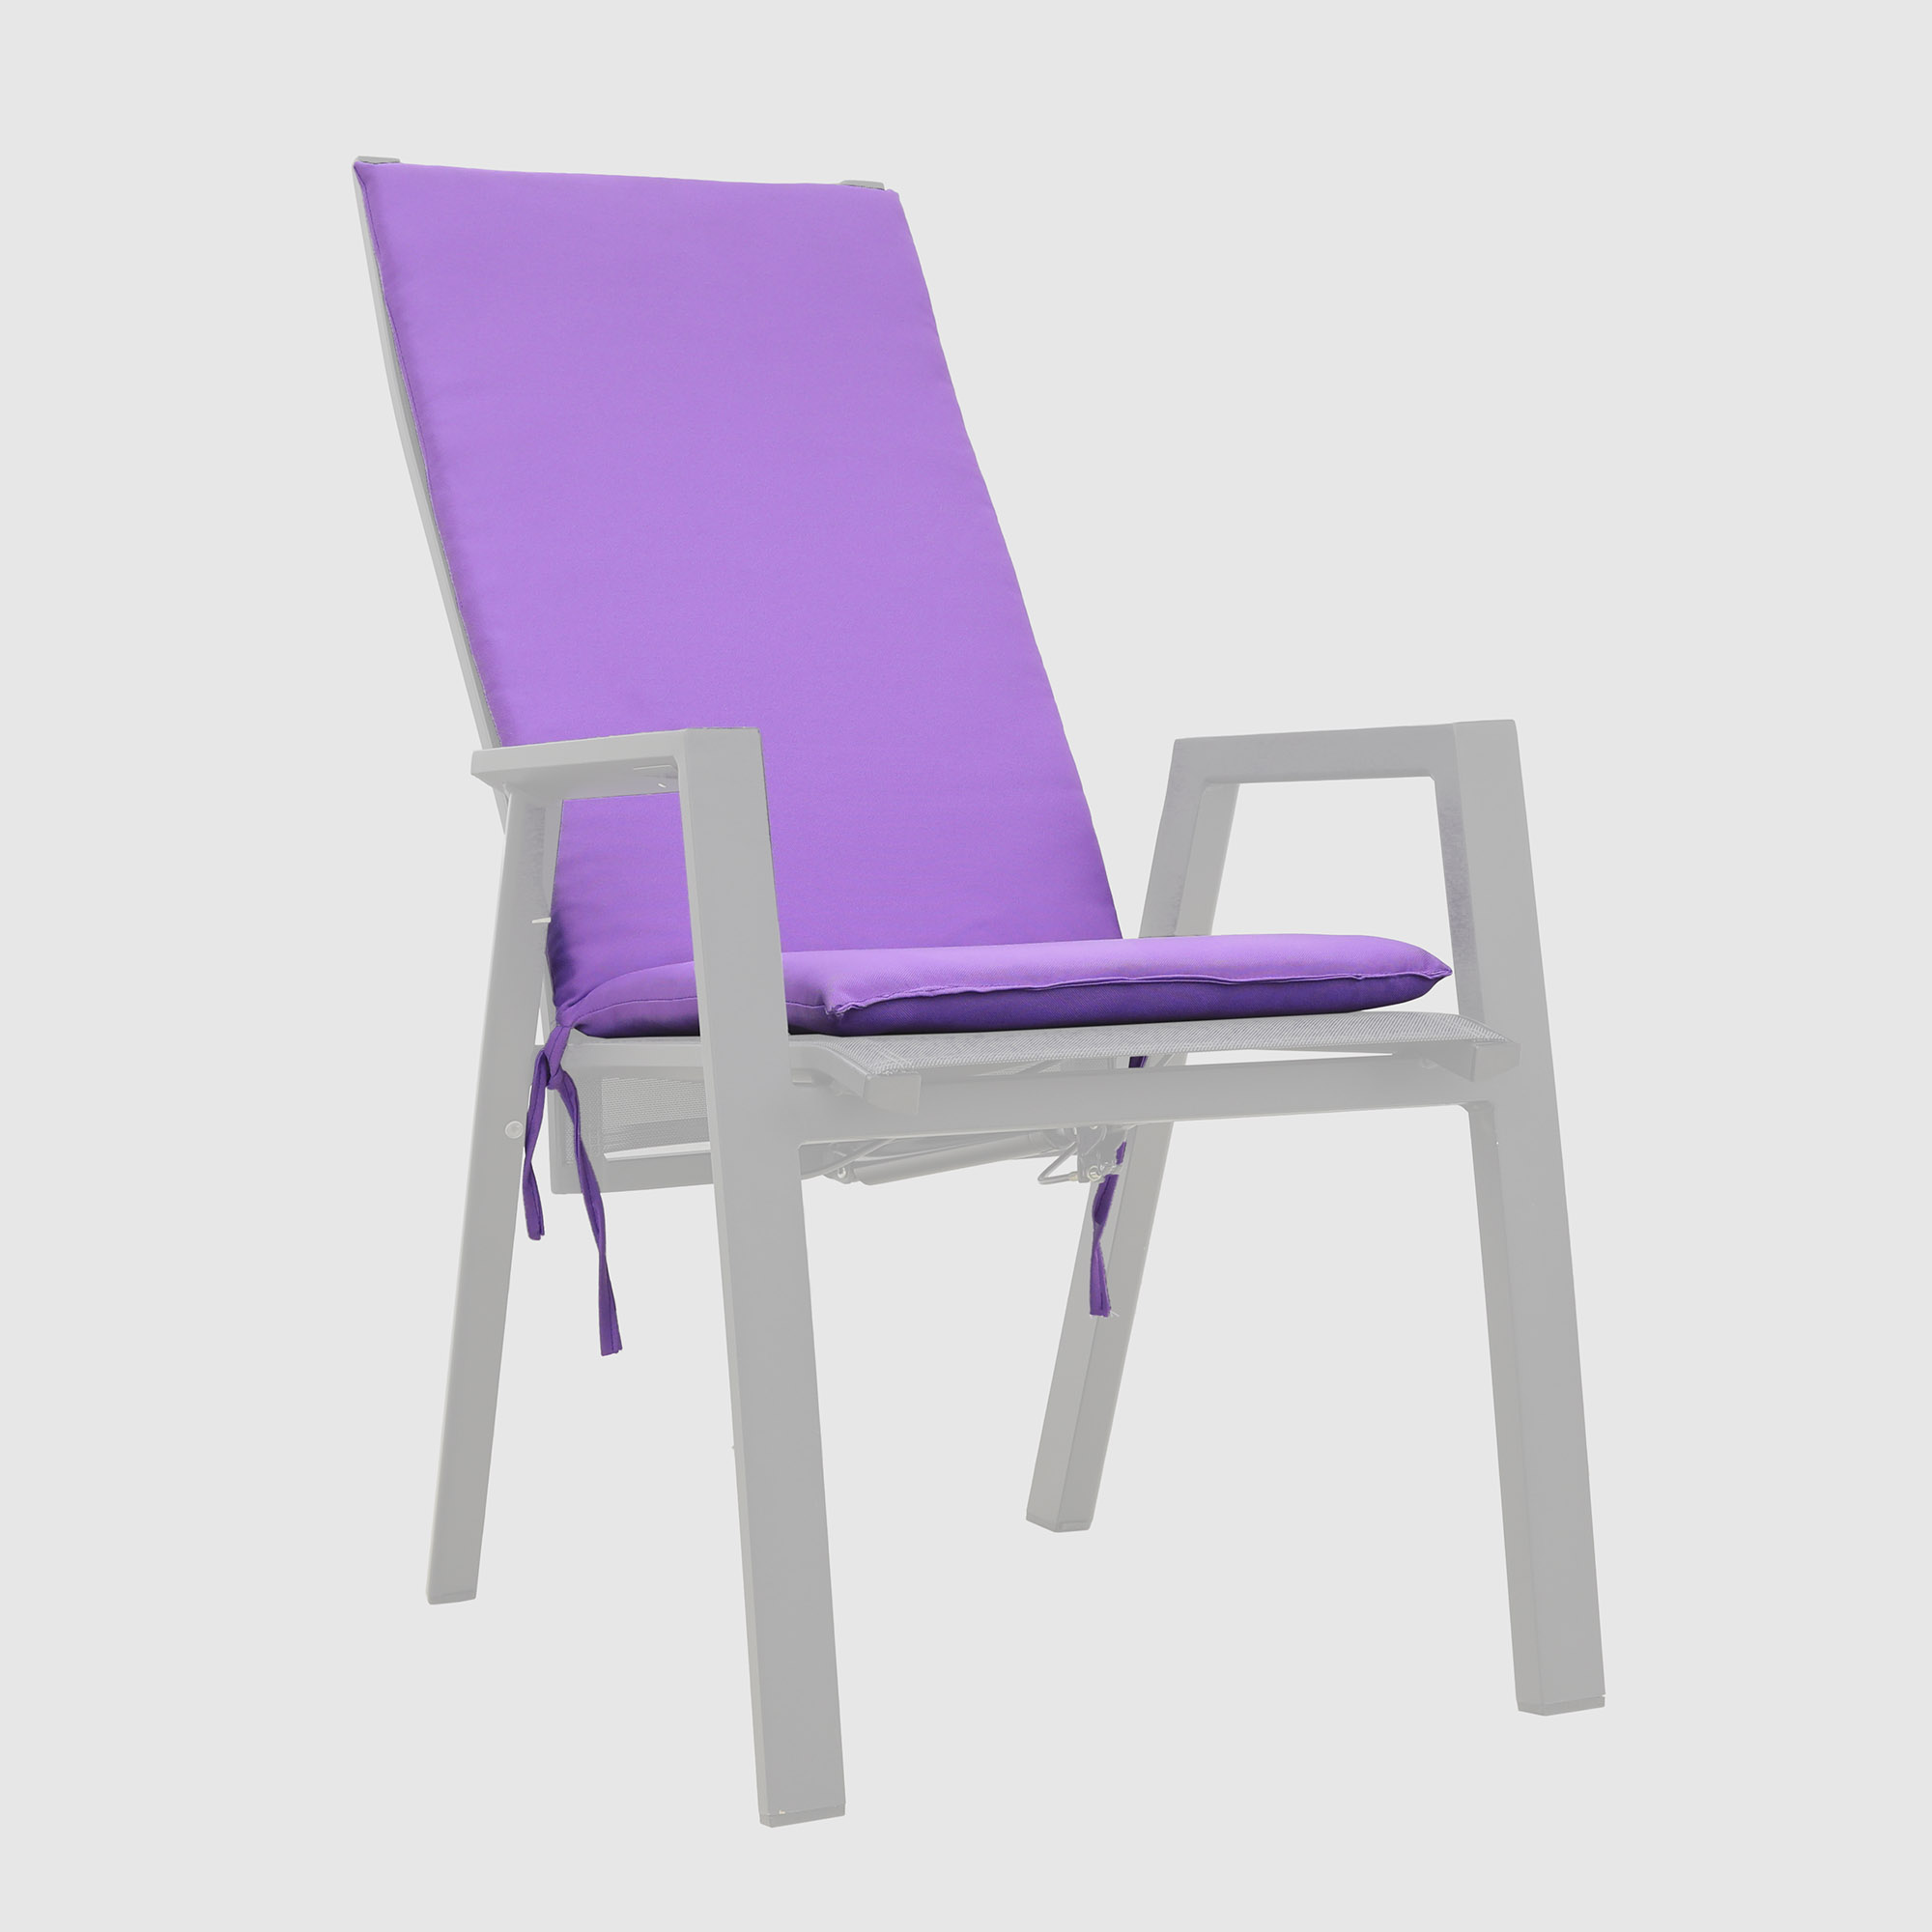 Матрац для кресла-шезлонга Летолюкс design